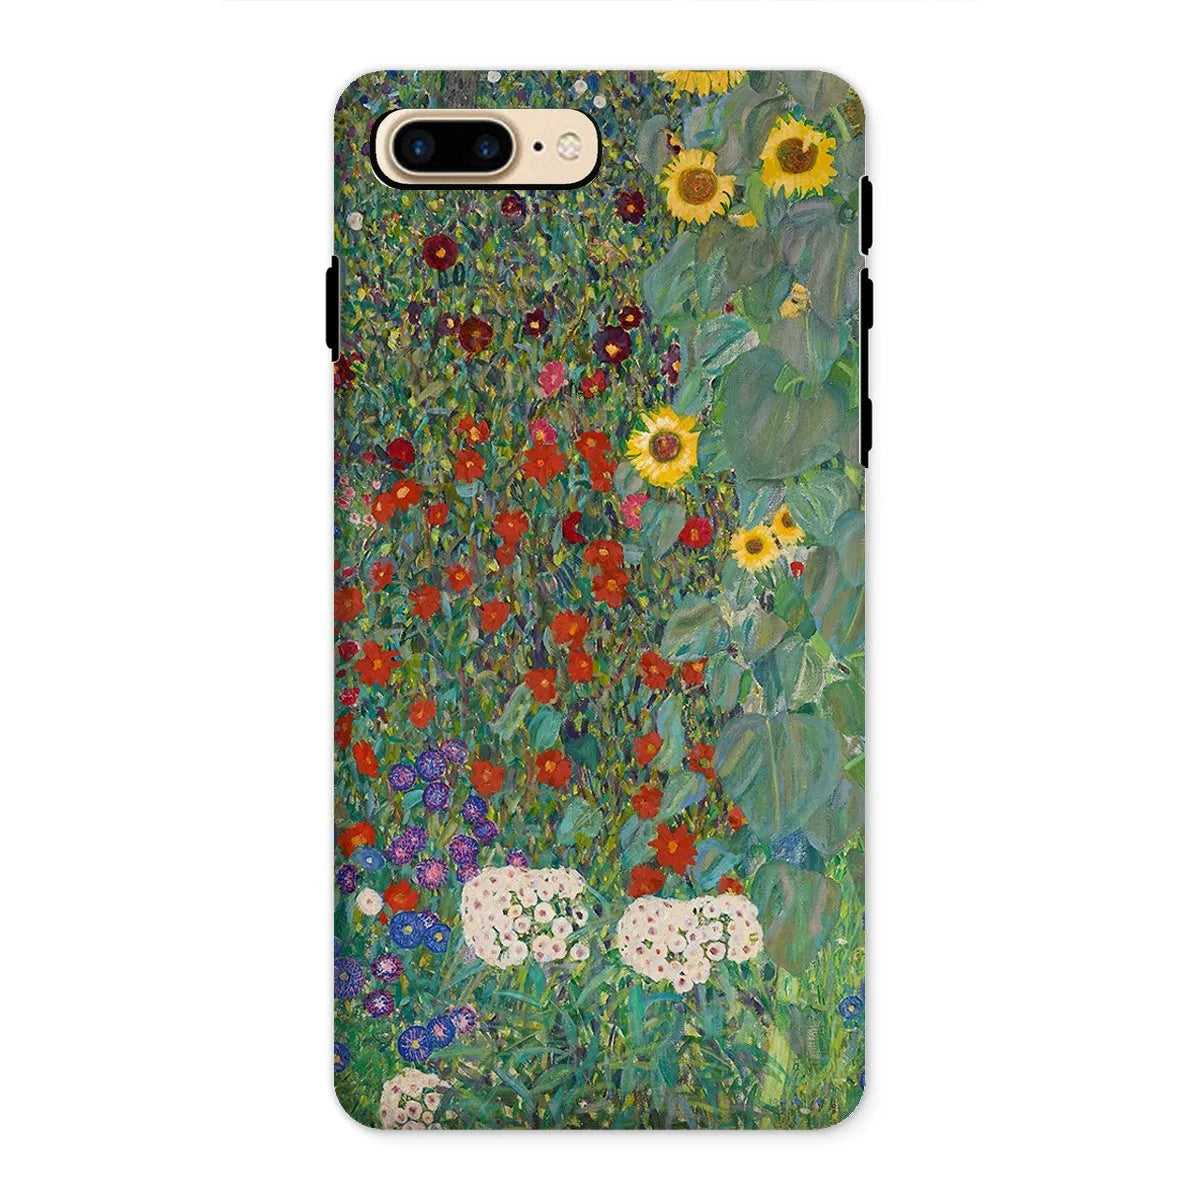 Farm Garden With Sunflowers Art Phone Case - Gustav Klimt - Iphone 8 Plus / Matte - Mobile Phone Cases - Aesthetic Art